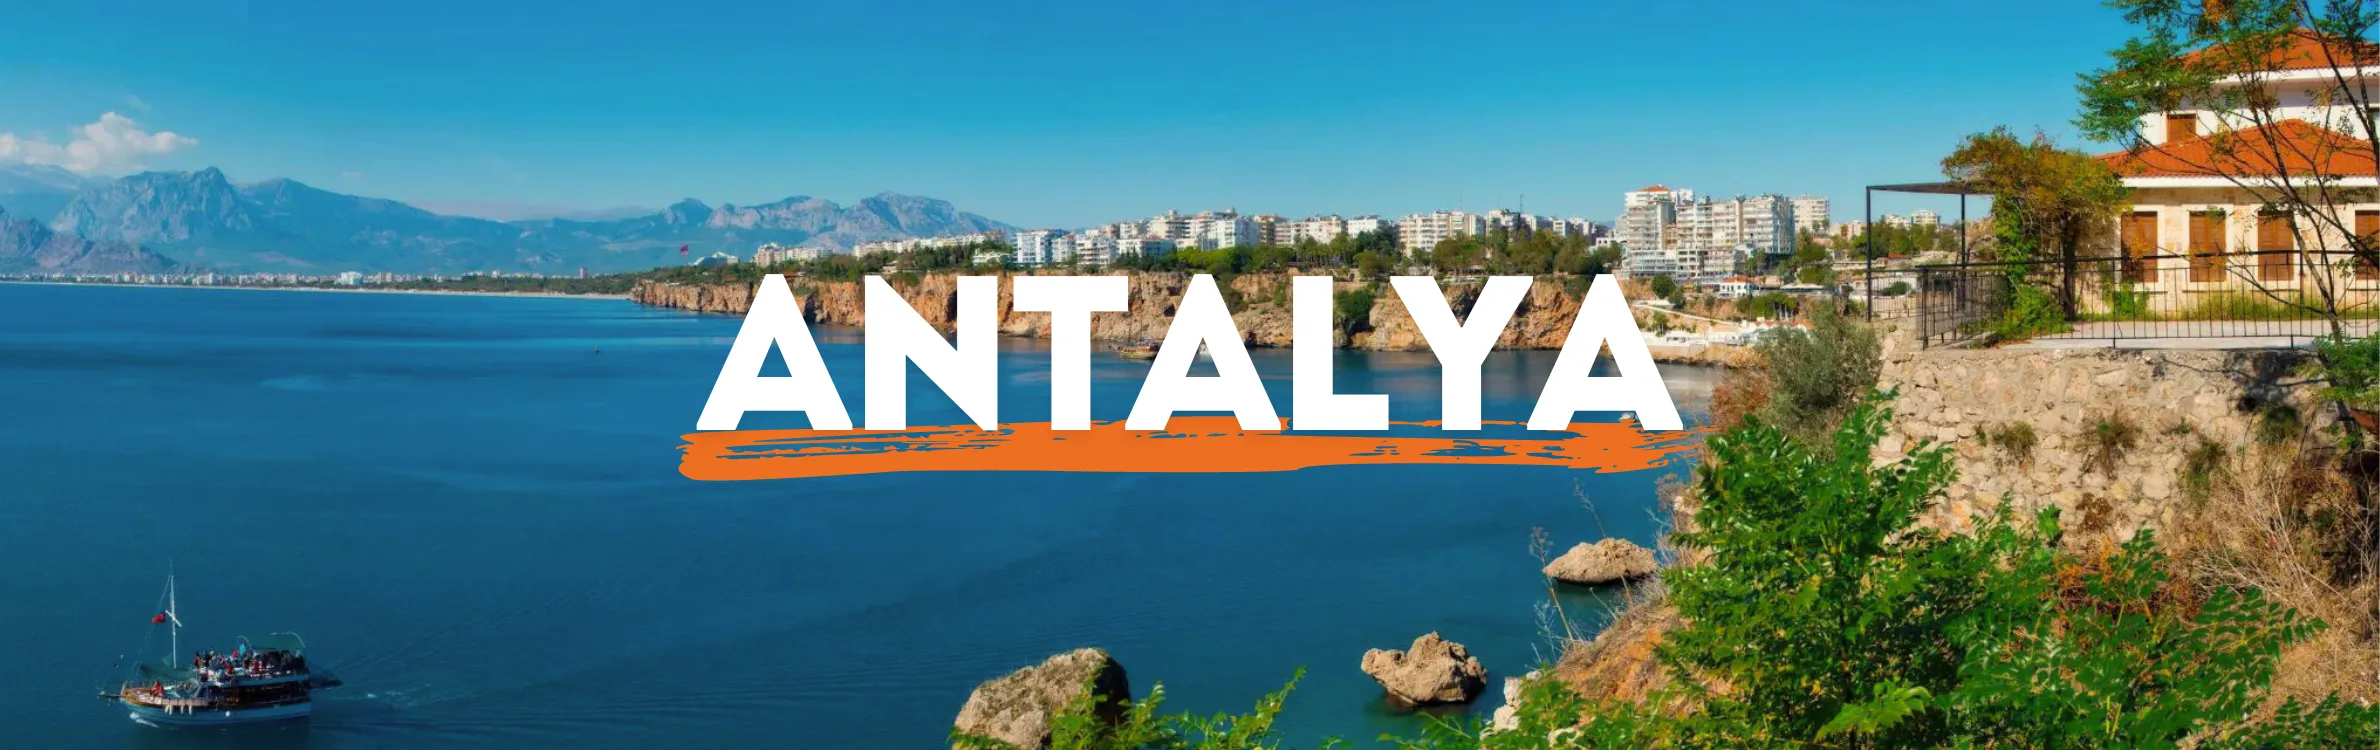 Antalya-Last-Minute-Header